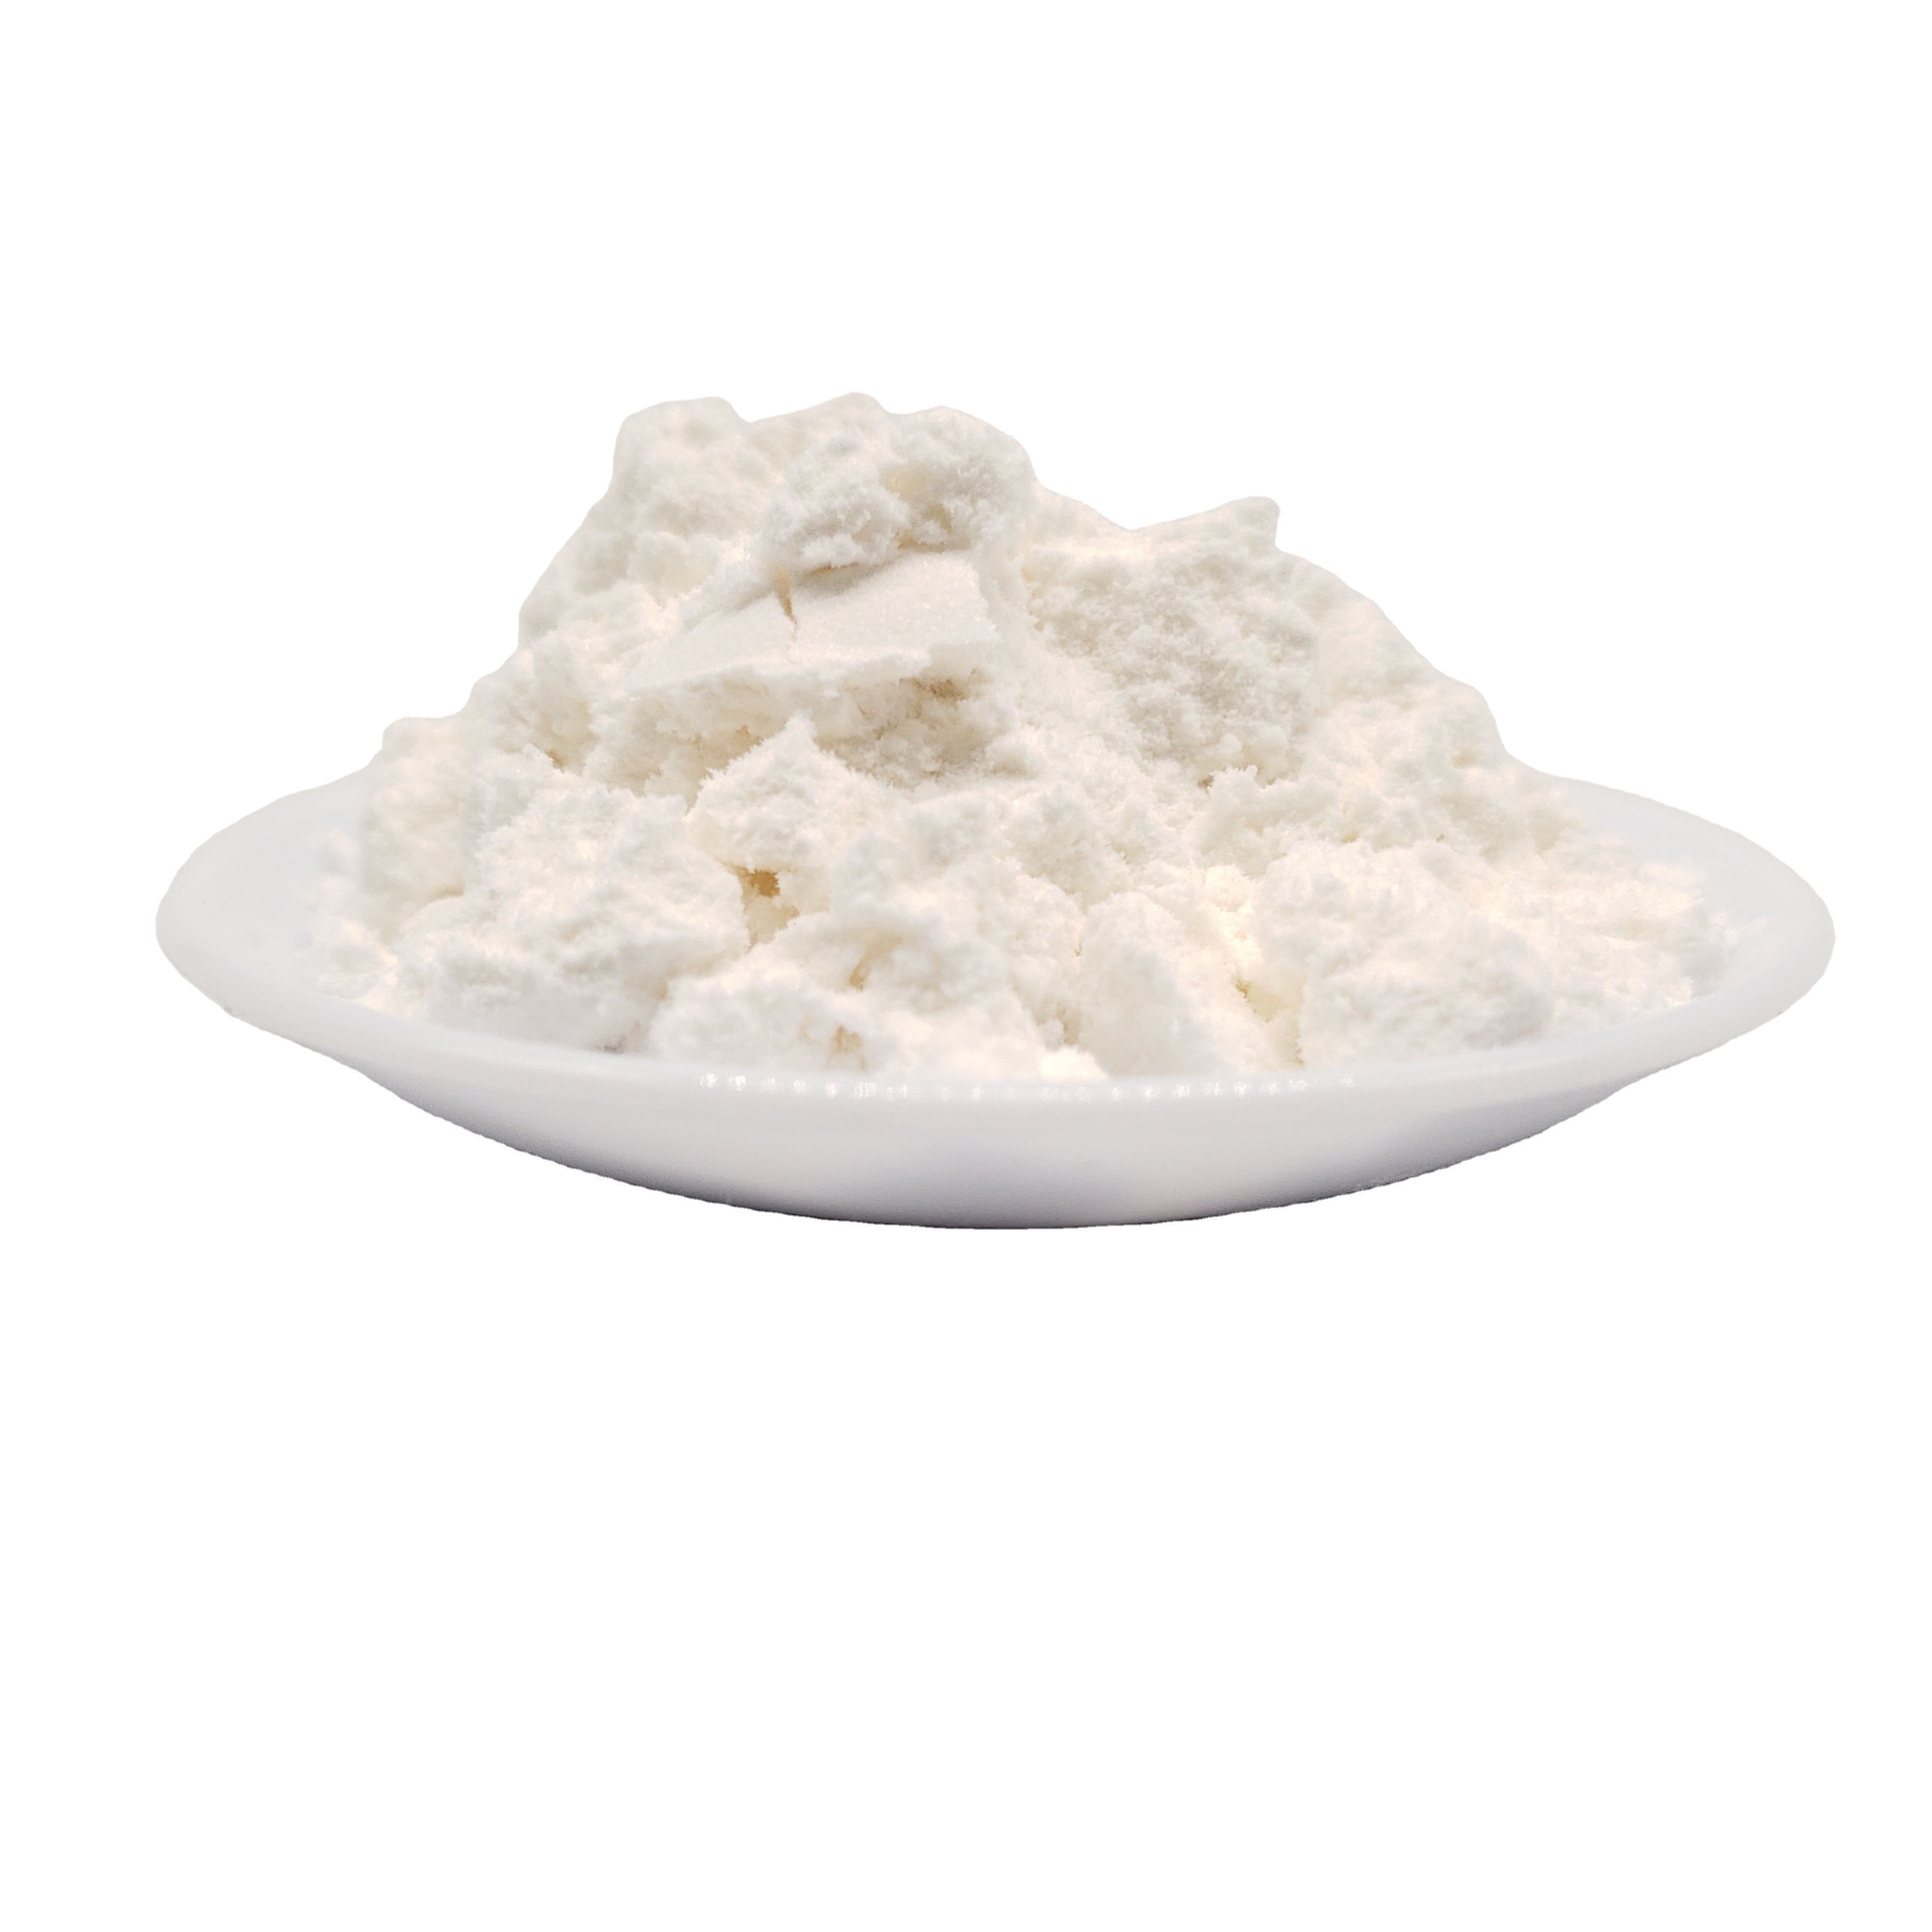 Tris (2-carboxyethyl) Phosphine Hydrochloride Powder CAS No. 51805-45-9